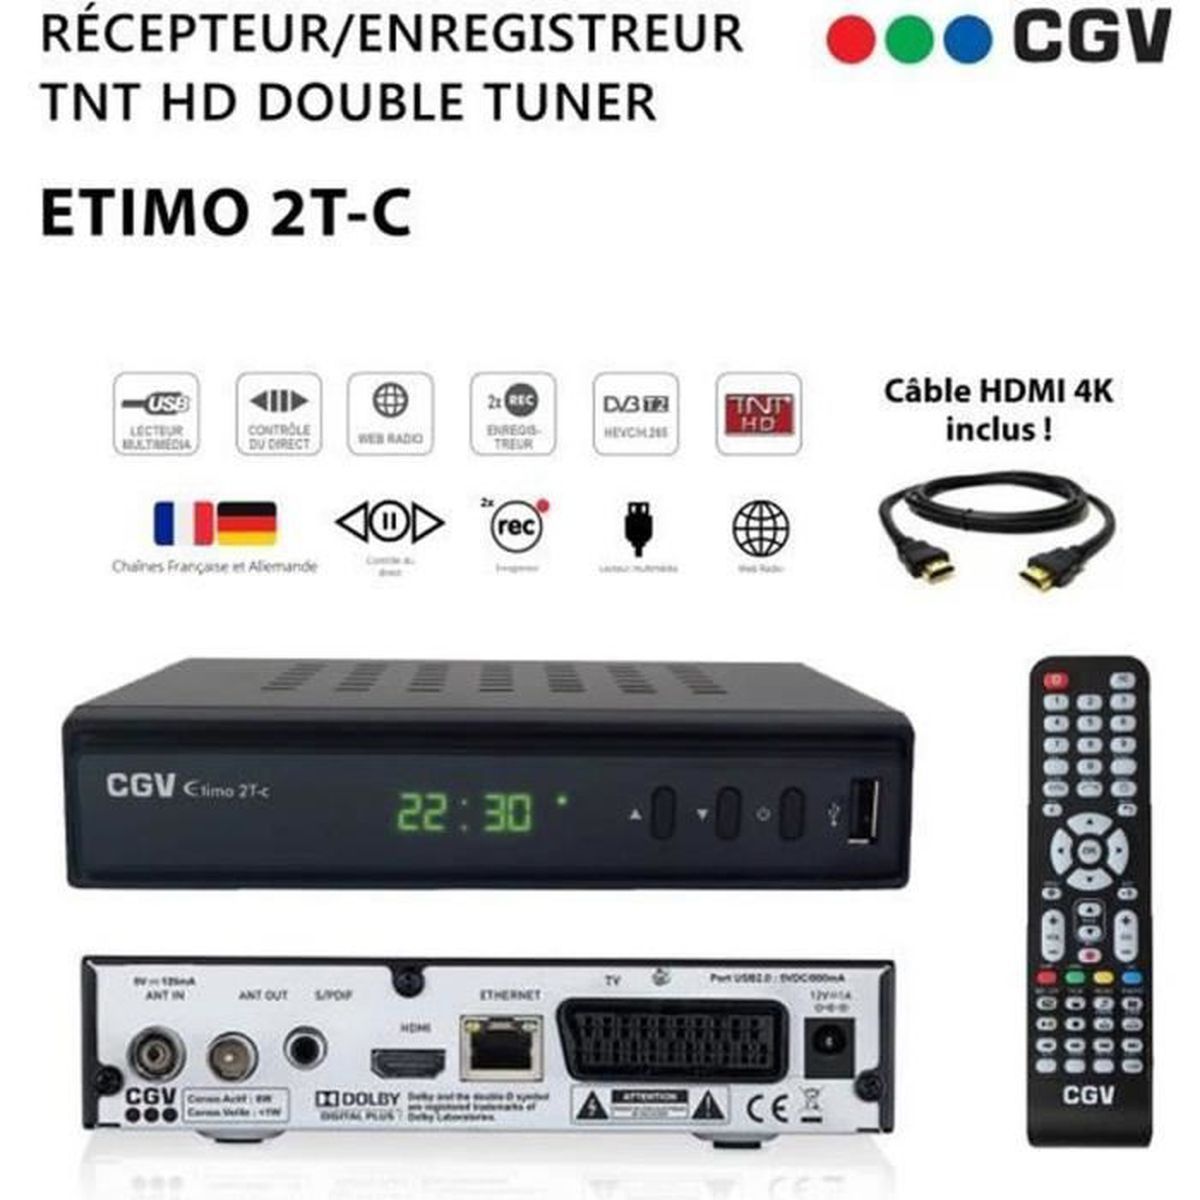 Récepteur Enregistreur Décodeur TNT HD Double Tuner CGV Etimo 2T-c + Câble HDMI 4K - Chaînes de la TNT Française & Allemande